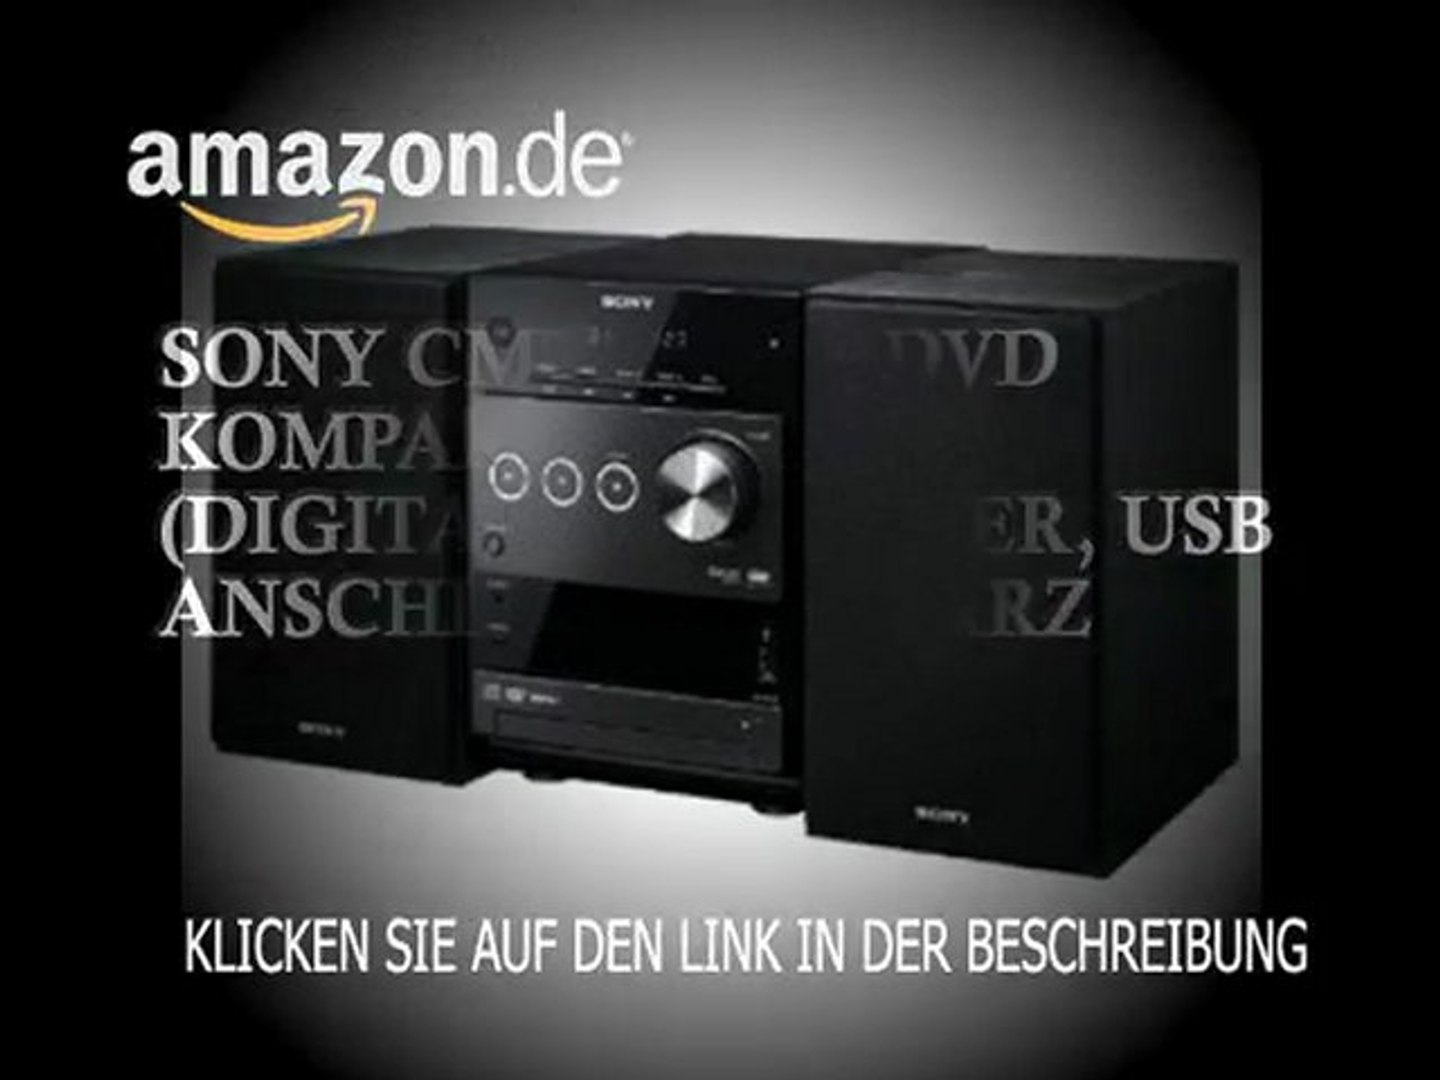 Sony CMT-DX400 DVD Kompaktanlage (Digitalverstärker, USB Anschluss) schwarz  - video Dailymotion